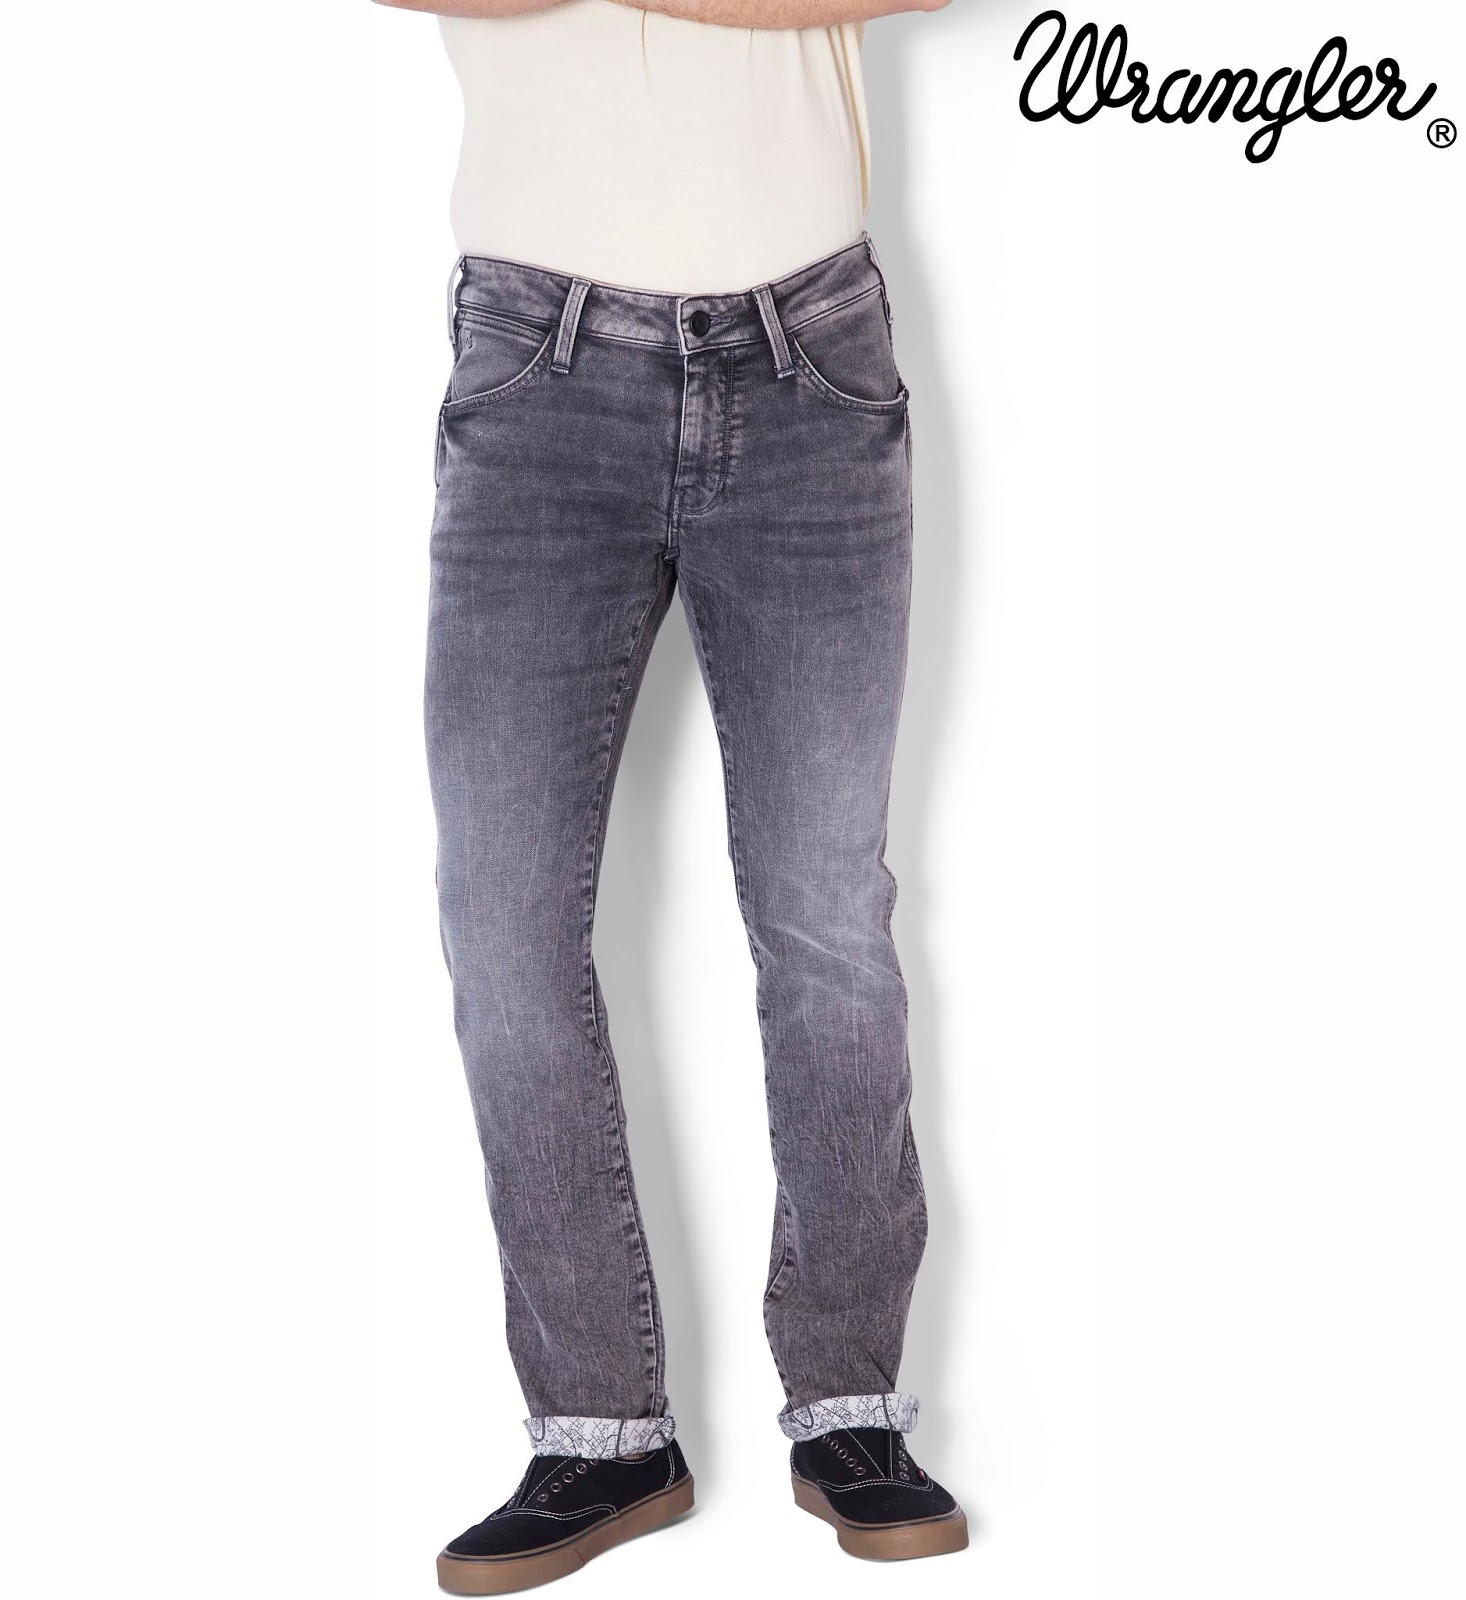 wrangler travel jeans